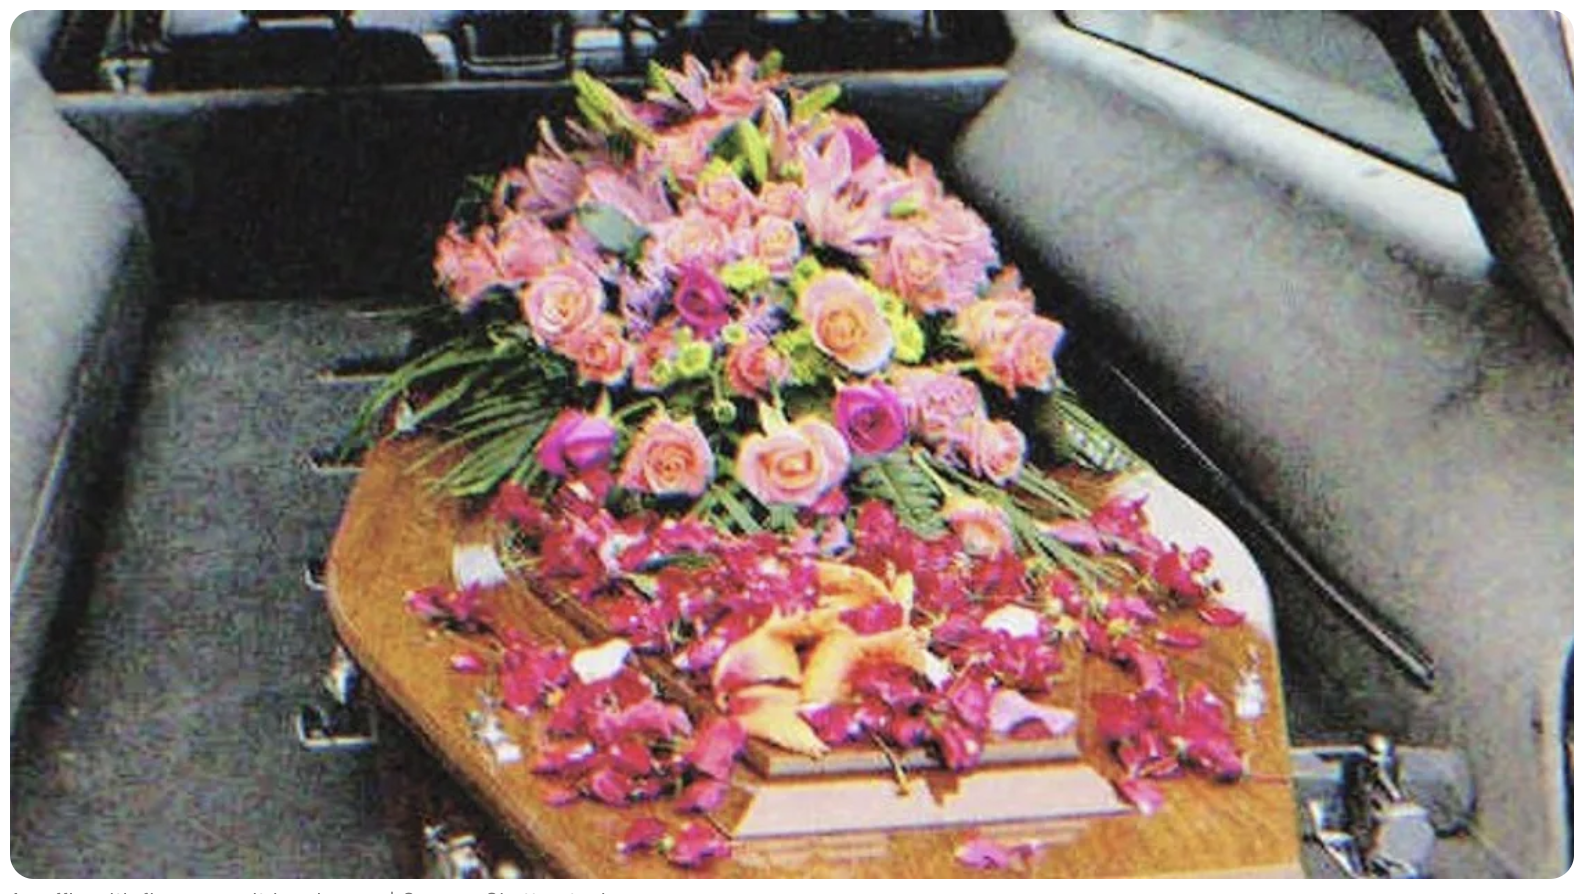 Ein Sarg mit Blumen darauf in einem Leichenwagen | Quelle: Shutterstock